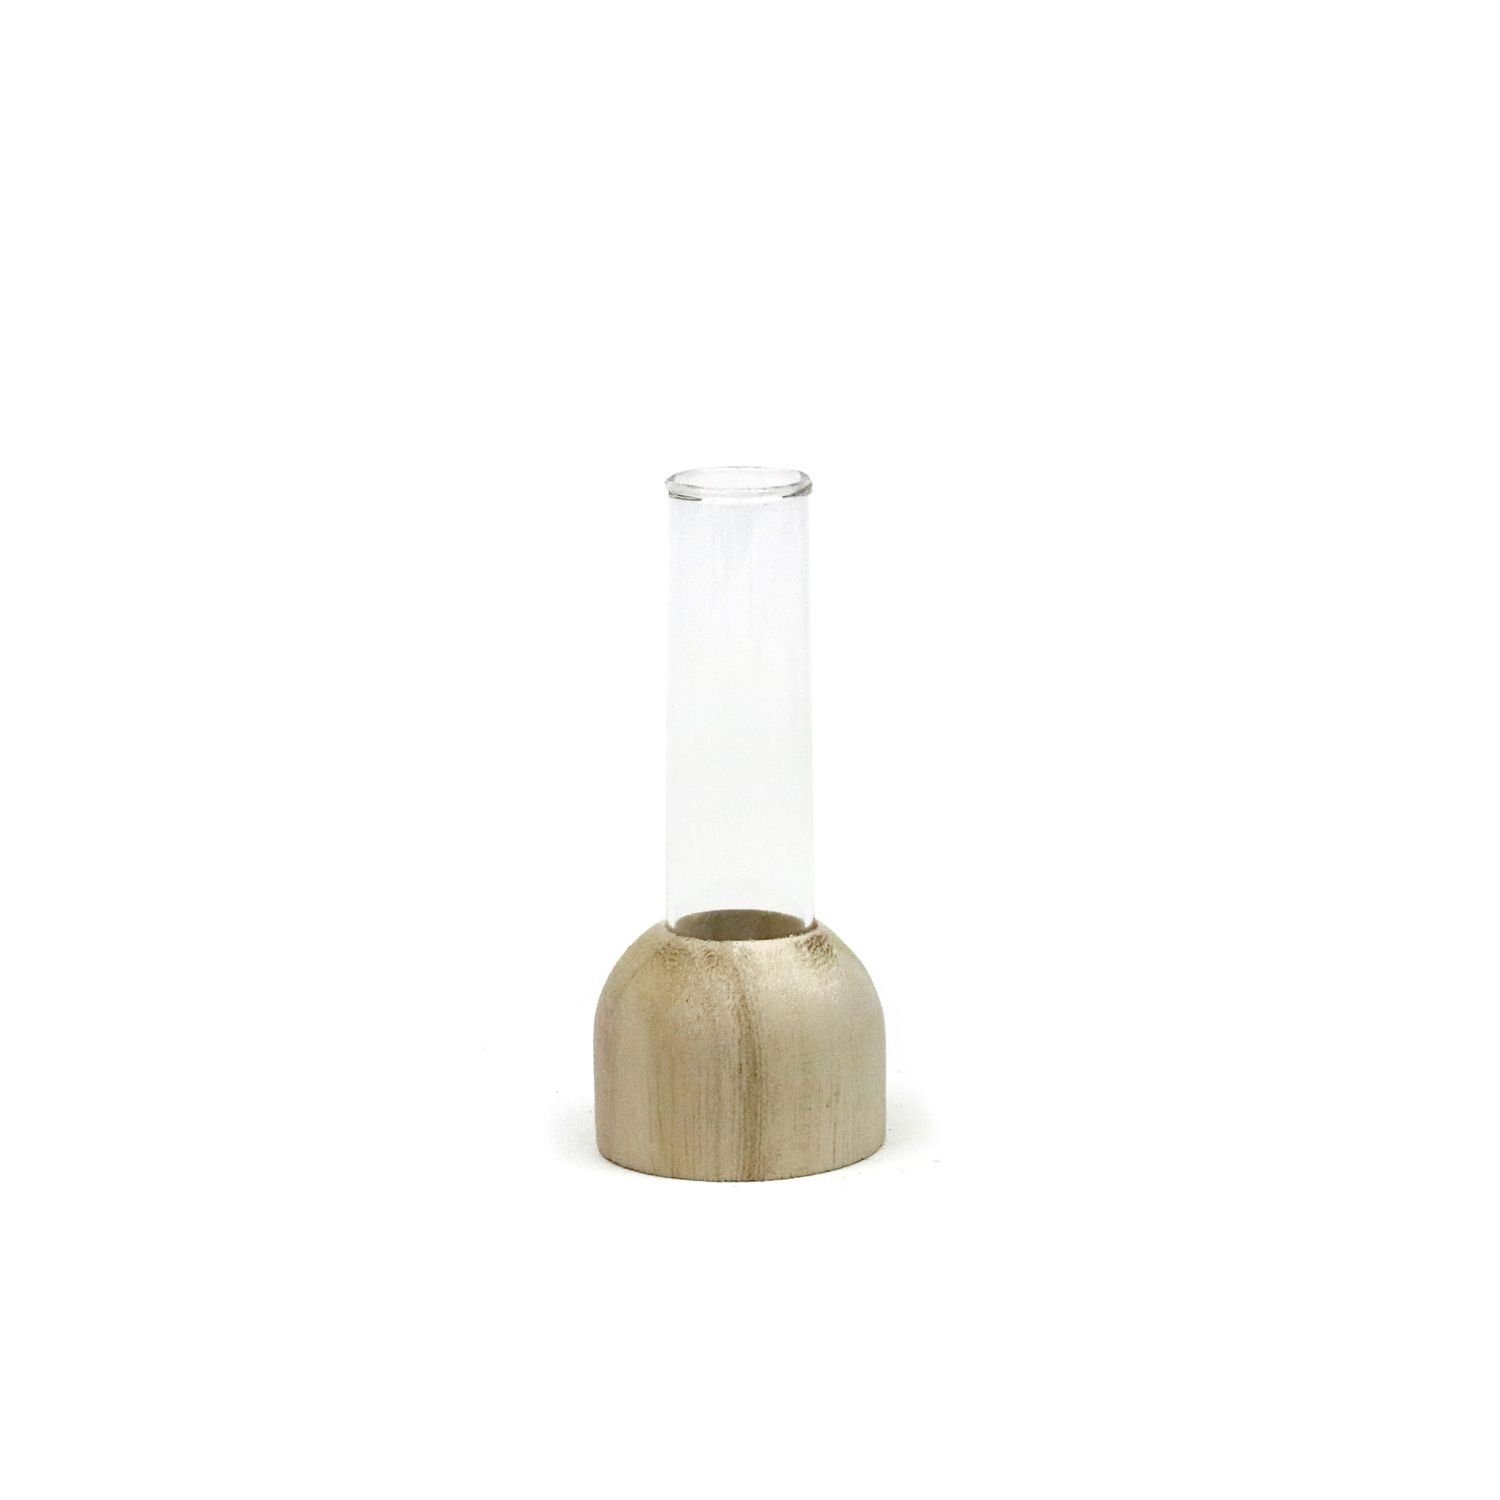 NaDeco Dekovase Reagenzglas Vase aus Holz, Packung mit 2 Stück, Größe h.10 Ø2cm